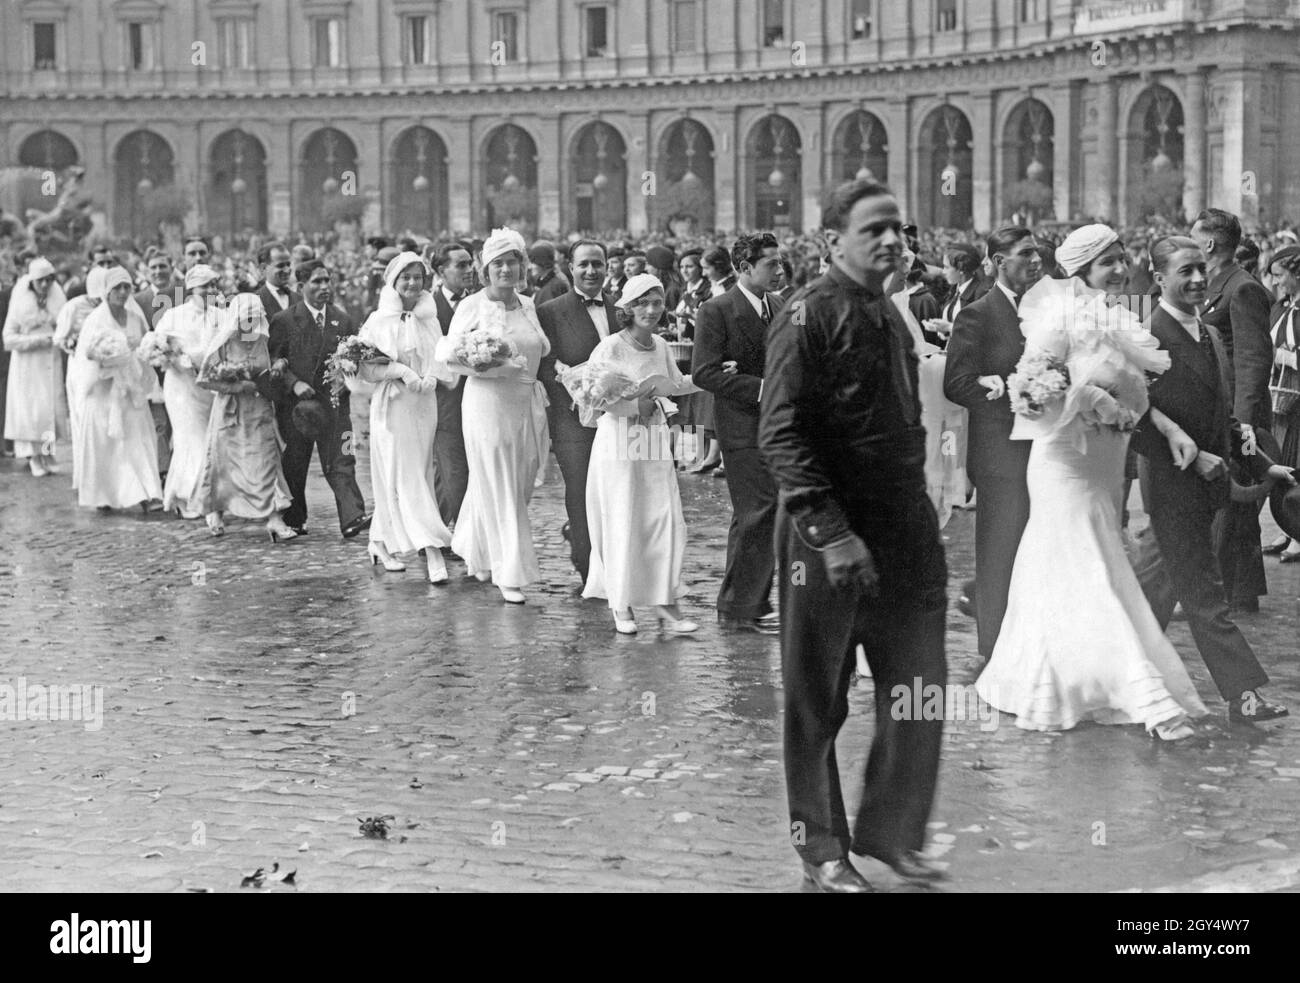 Il 30 ottobre 1933, 2600 sposi e sposi si sposarono insieme in un grande  evento fascista italiano a Roma. Nella foto, le coppie stanno camminando  attraverso Piazza dell'Esedra (oggi Piazza della Repubblica)